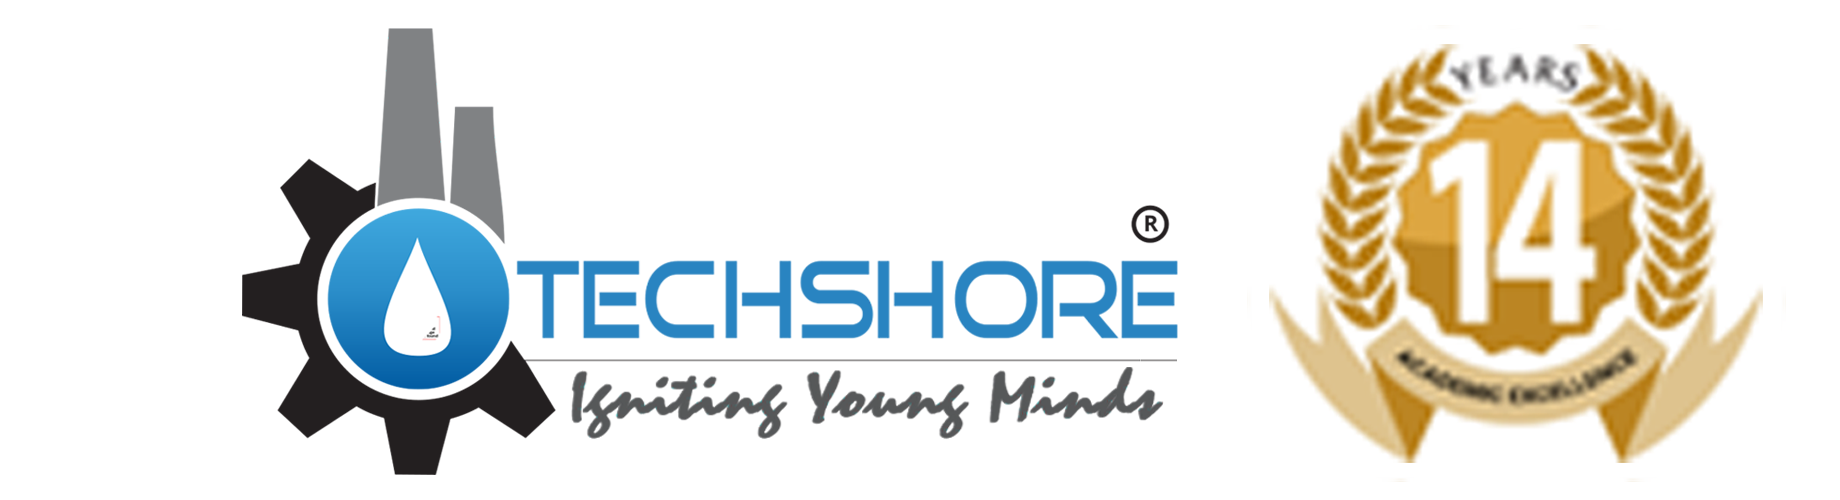 techshore-best civil institute-logo